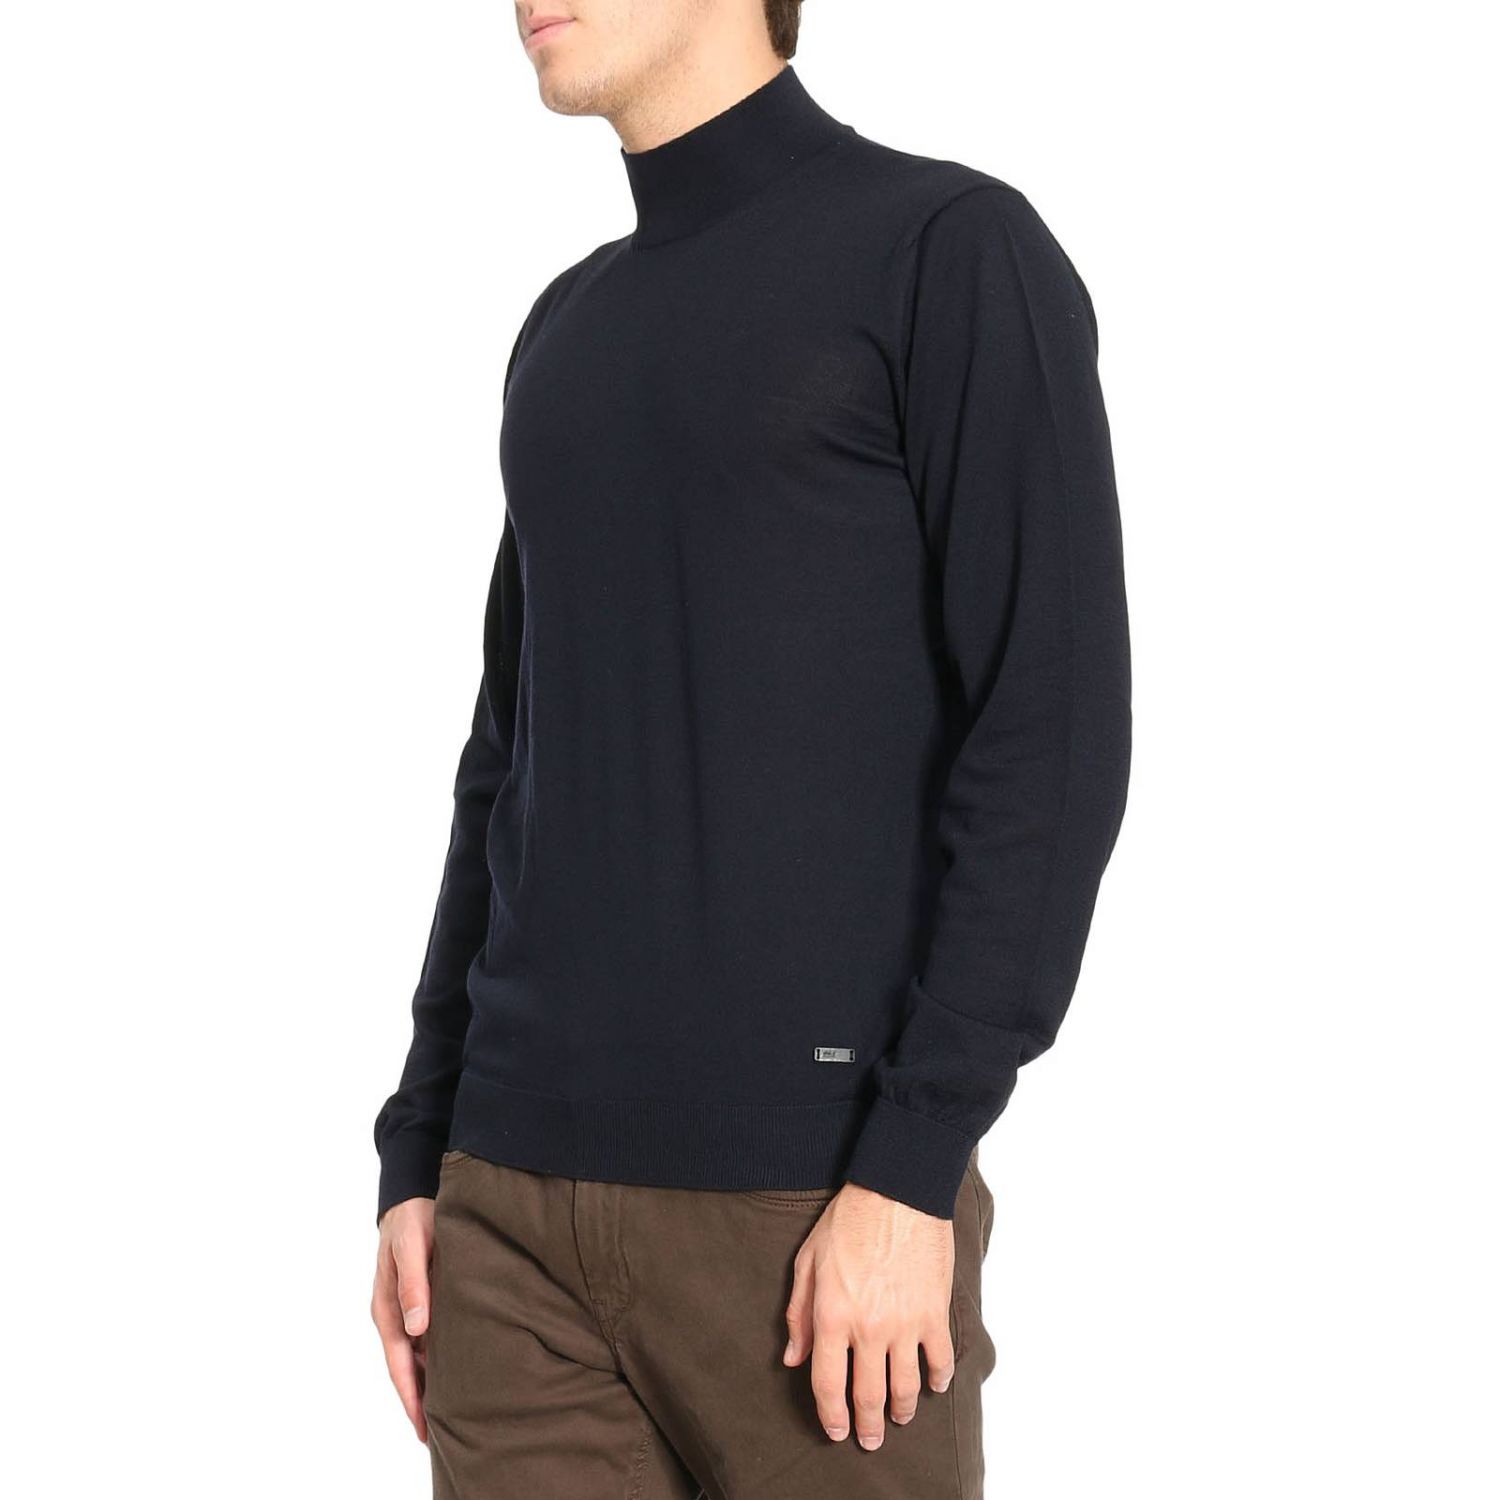 Armani Collezioni Outlet: Sweater men | Sweater Armani Collezioni Men ...